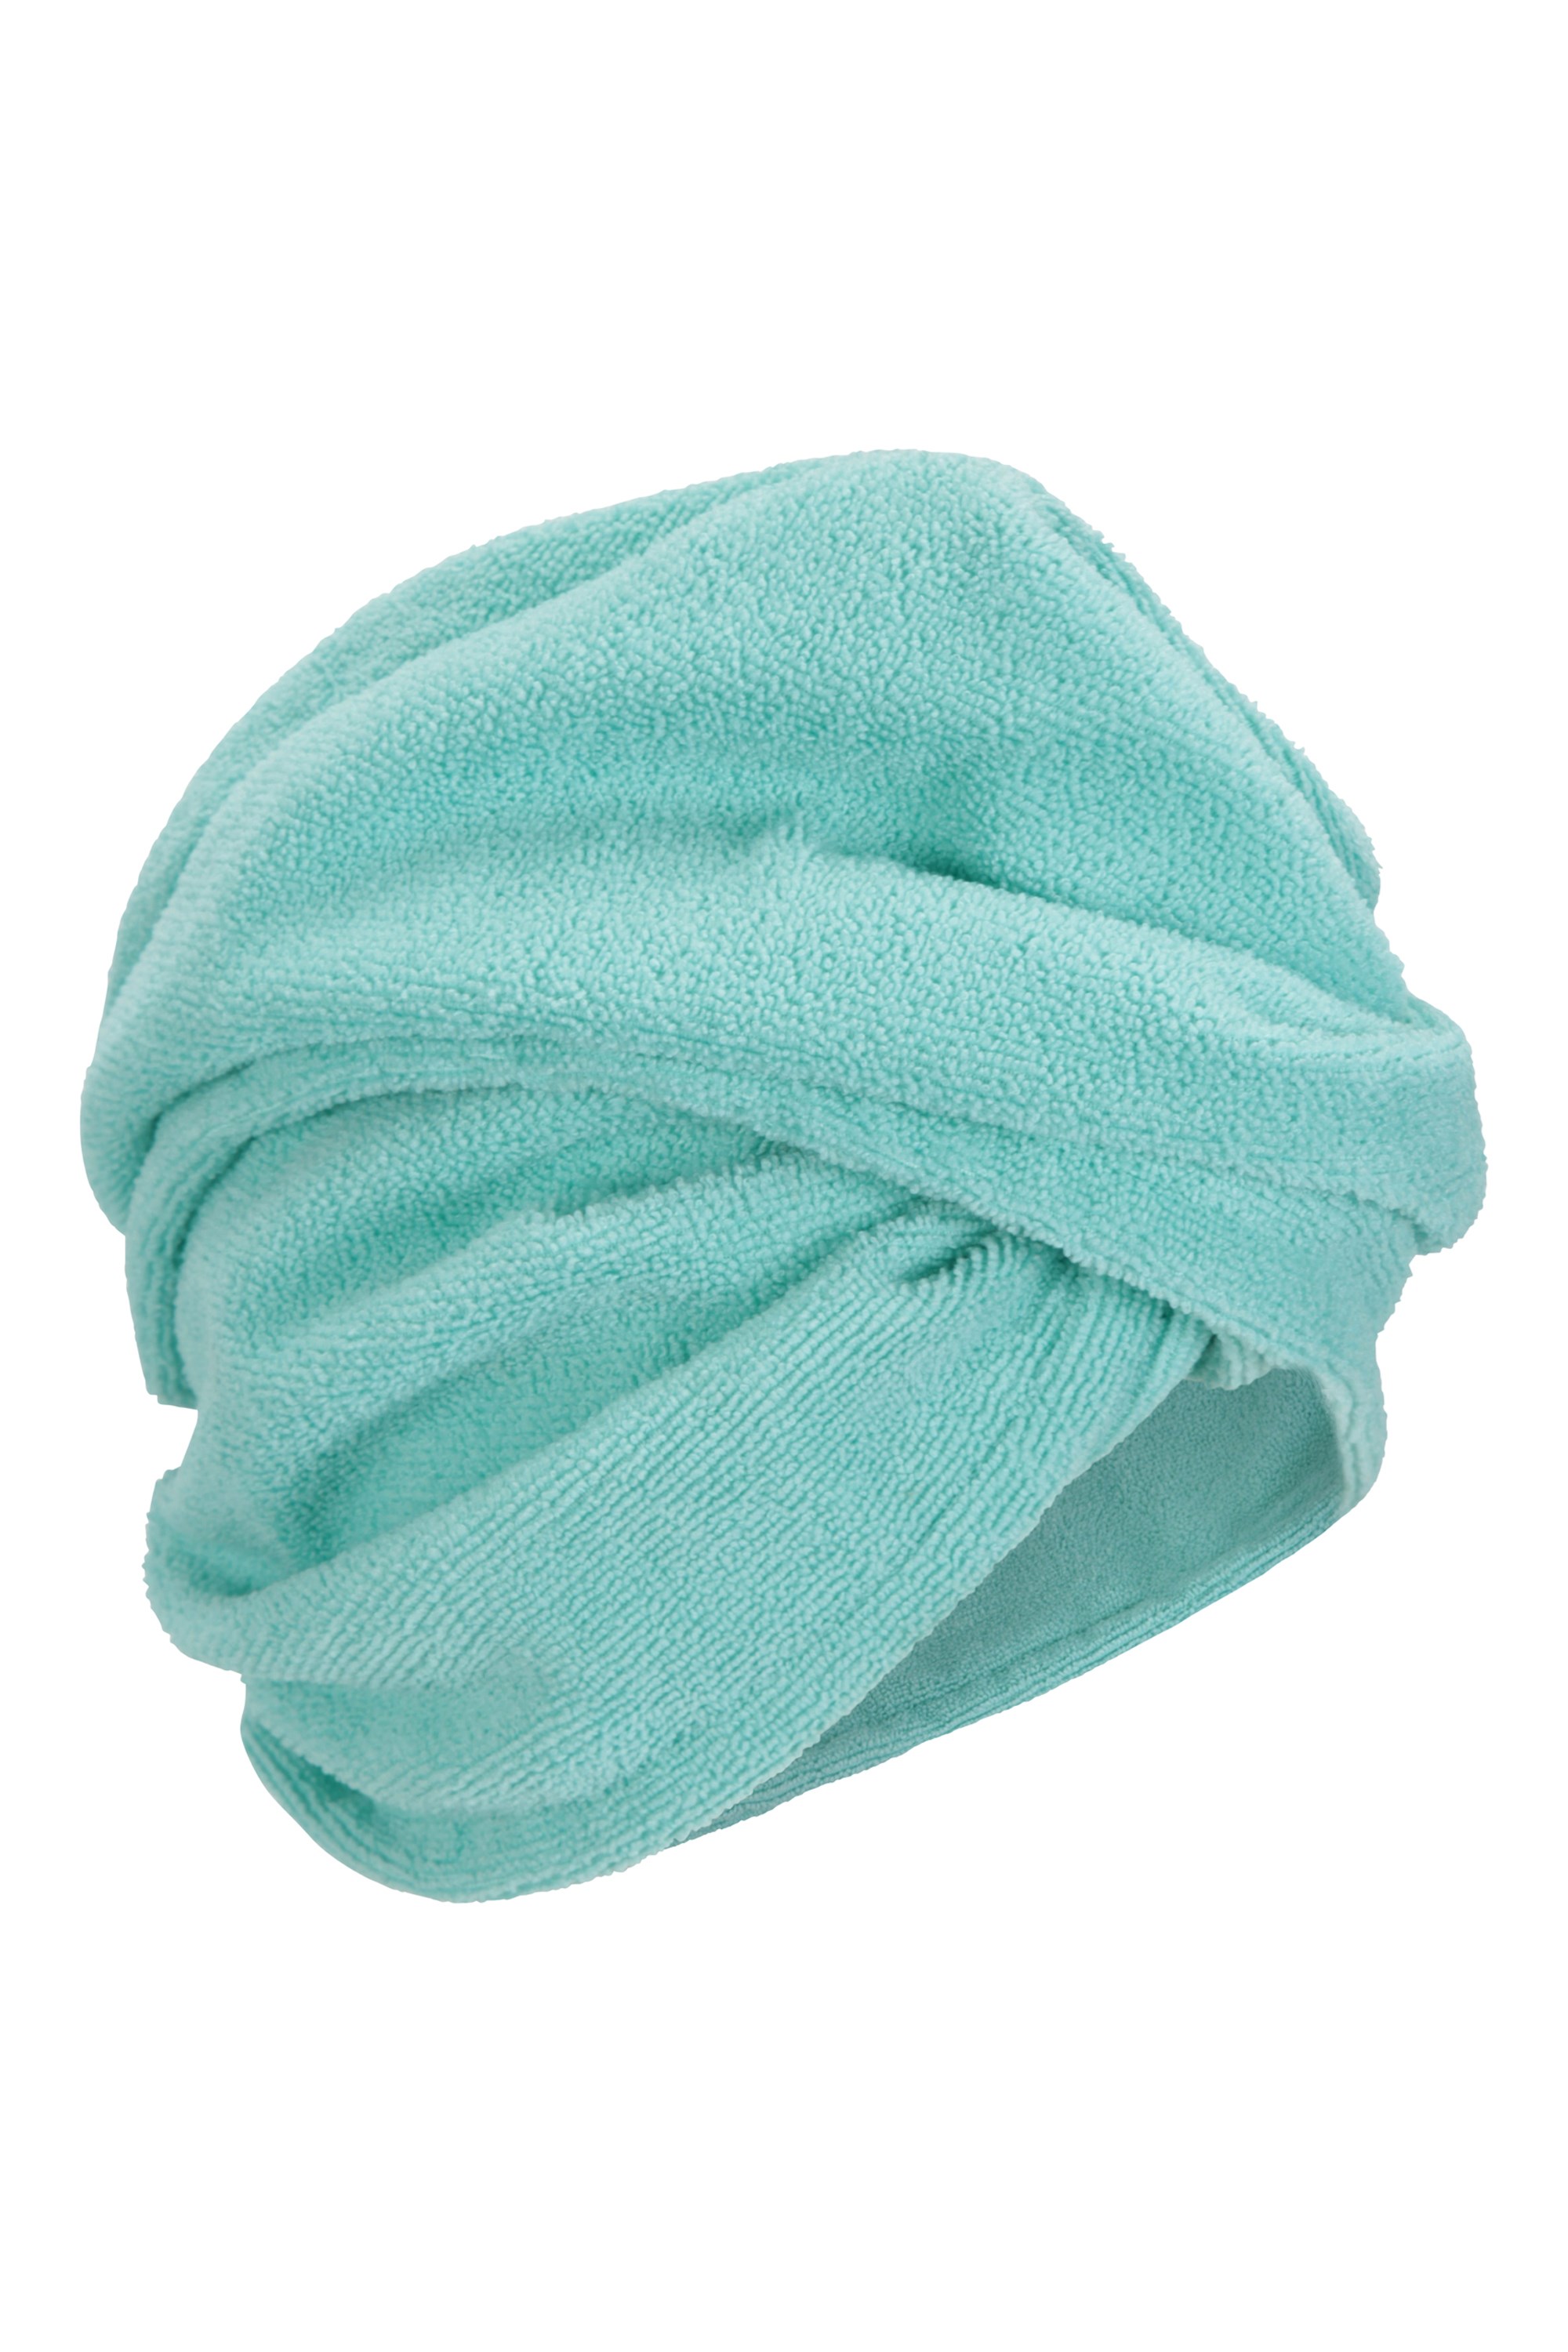 Hair Towel | Mountain Warehouse AU